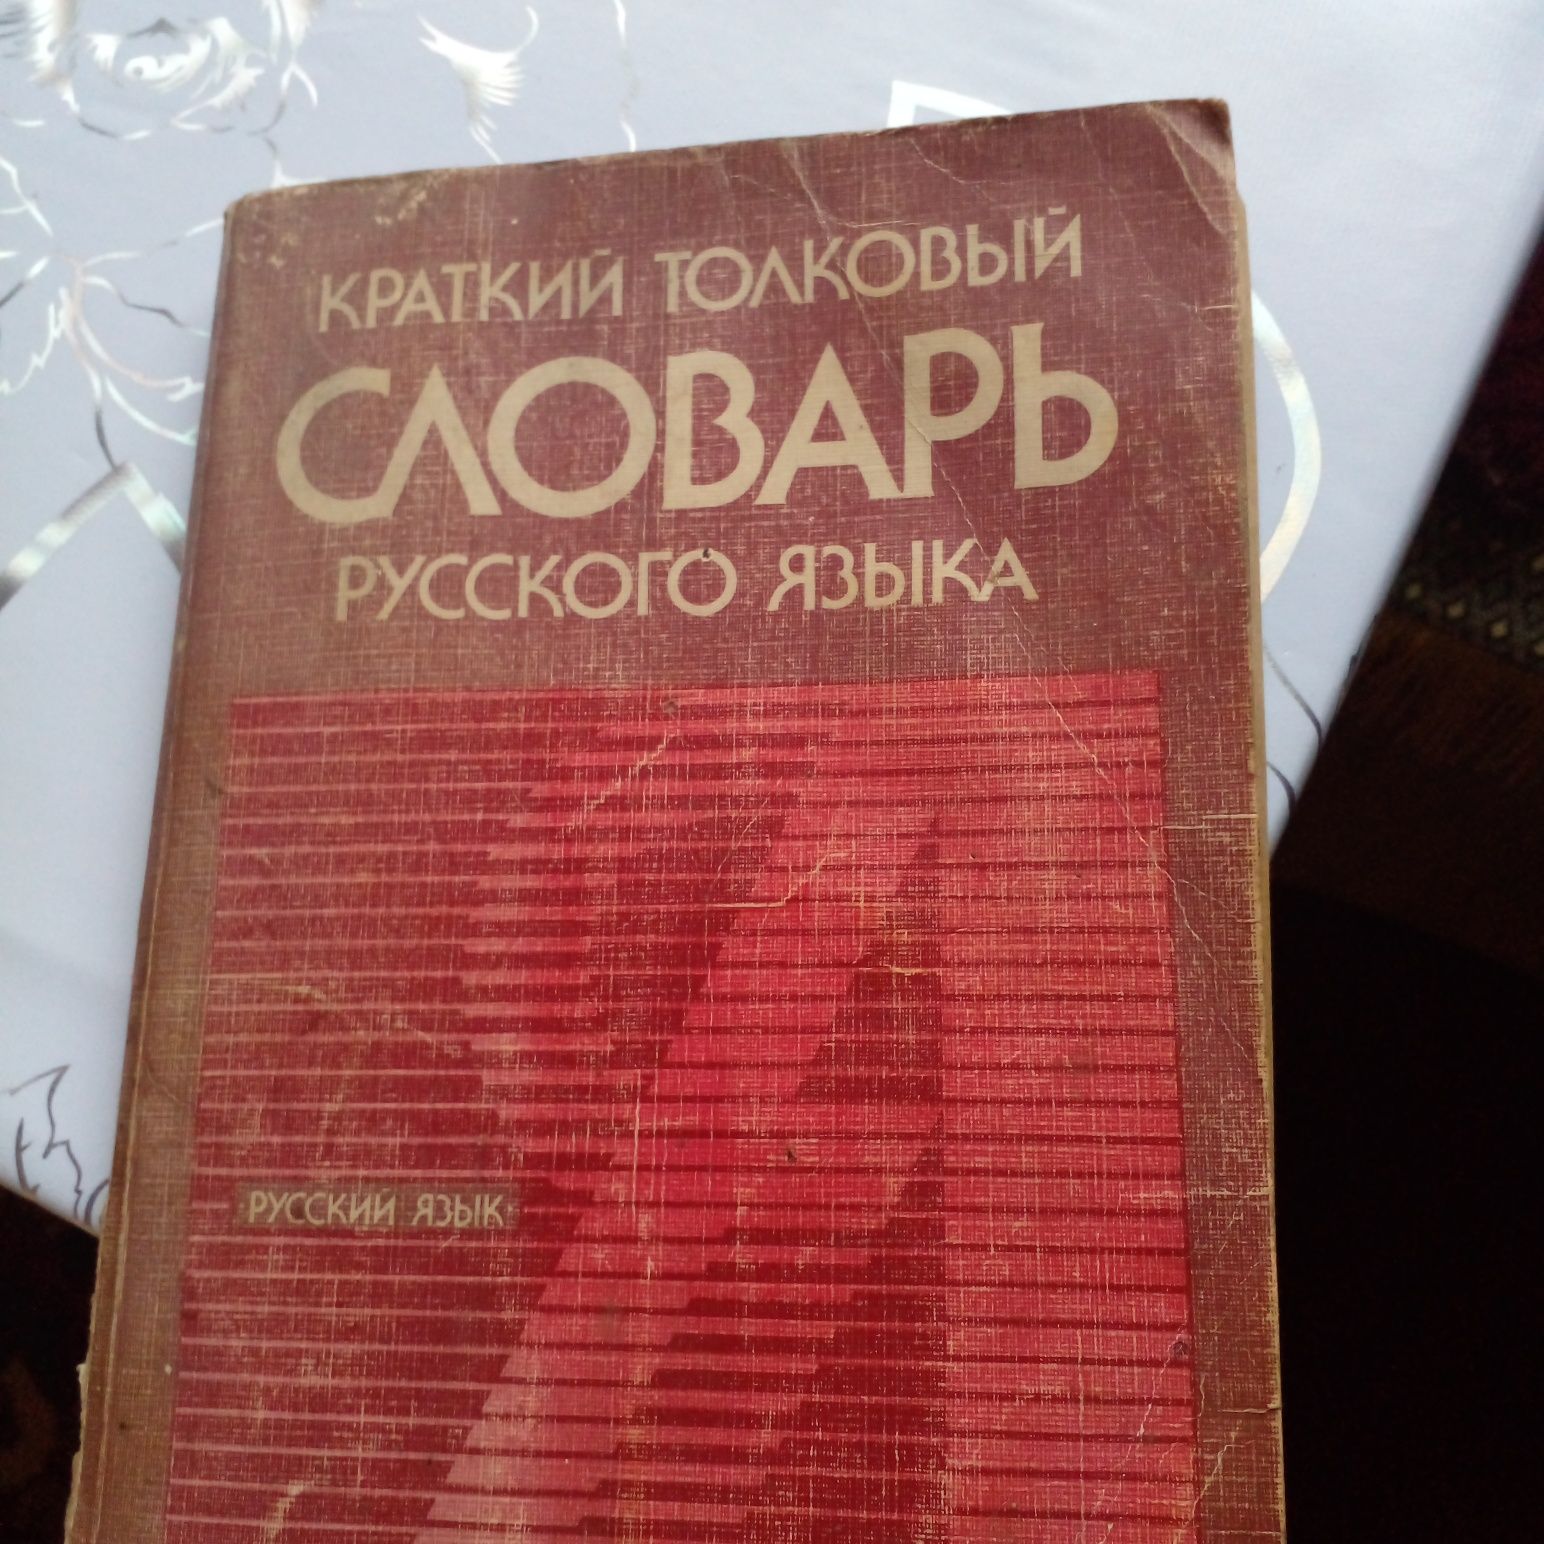 Продам книги в словаре русского языка  в конце правила